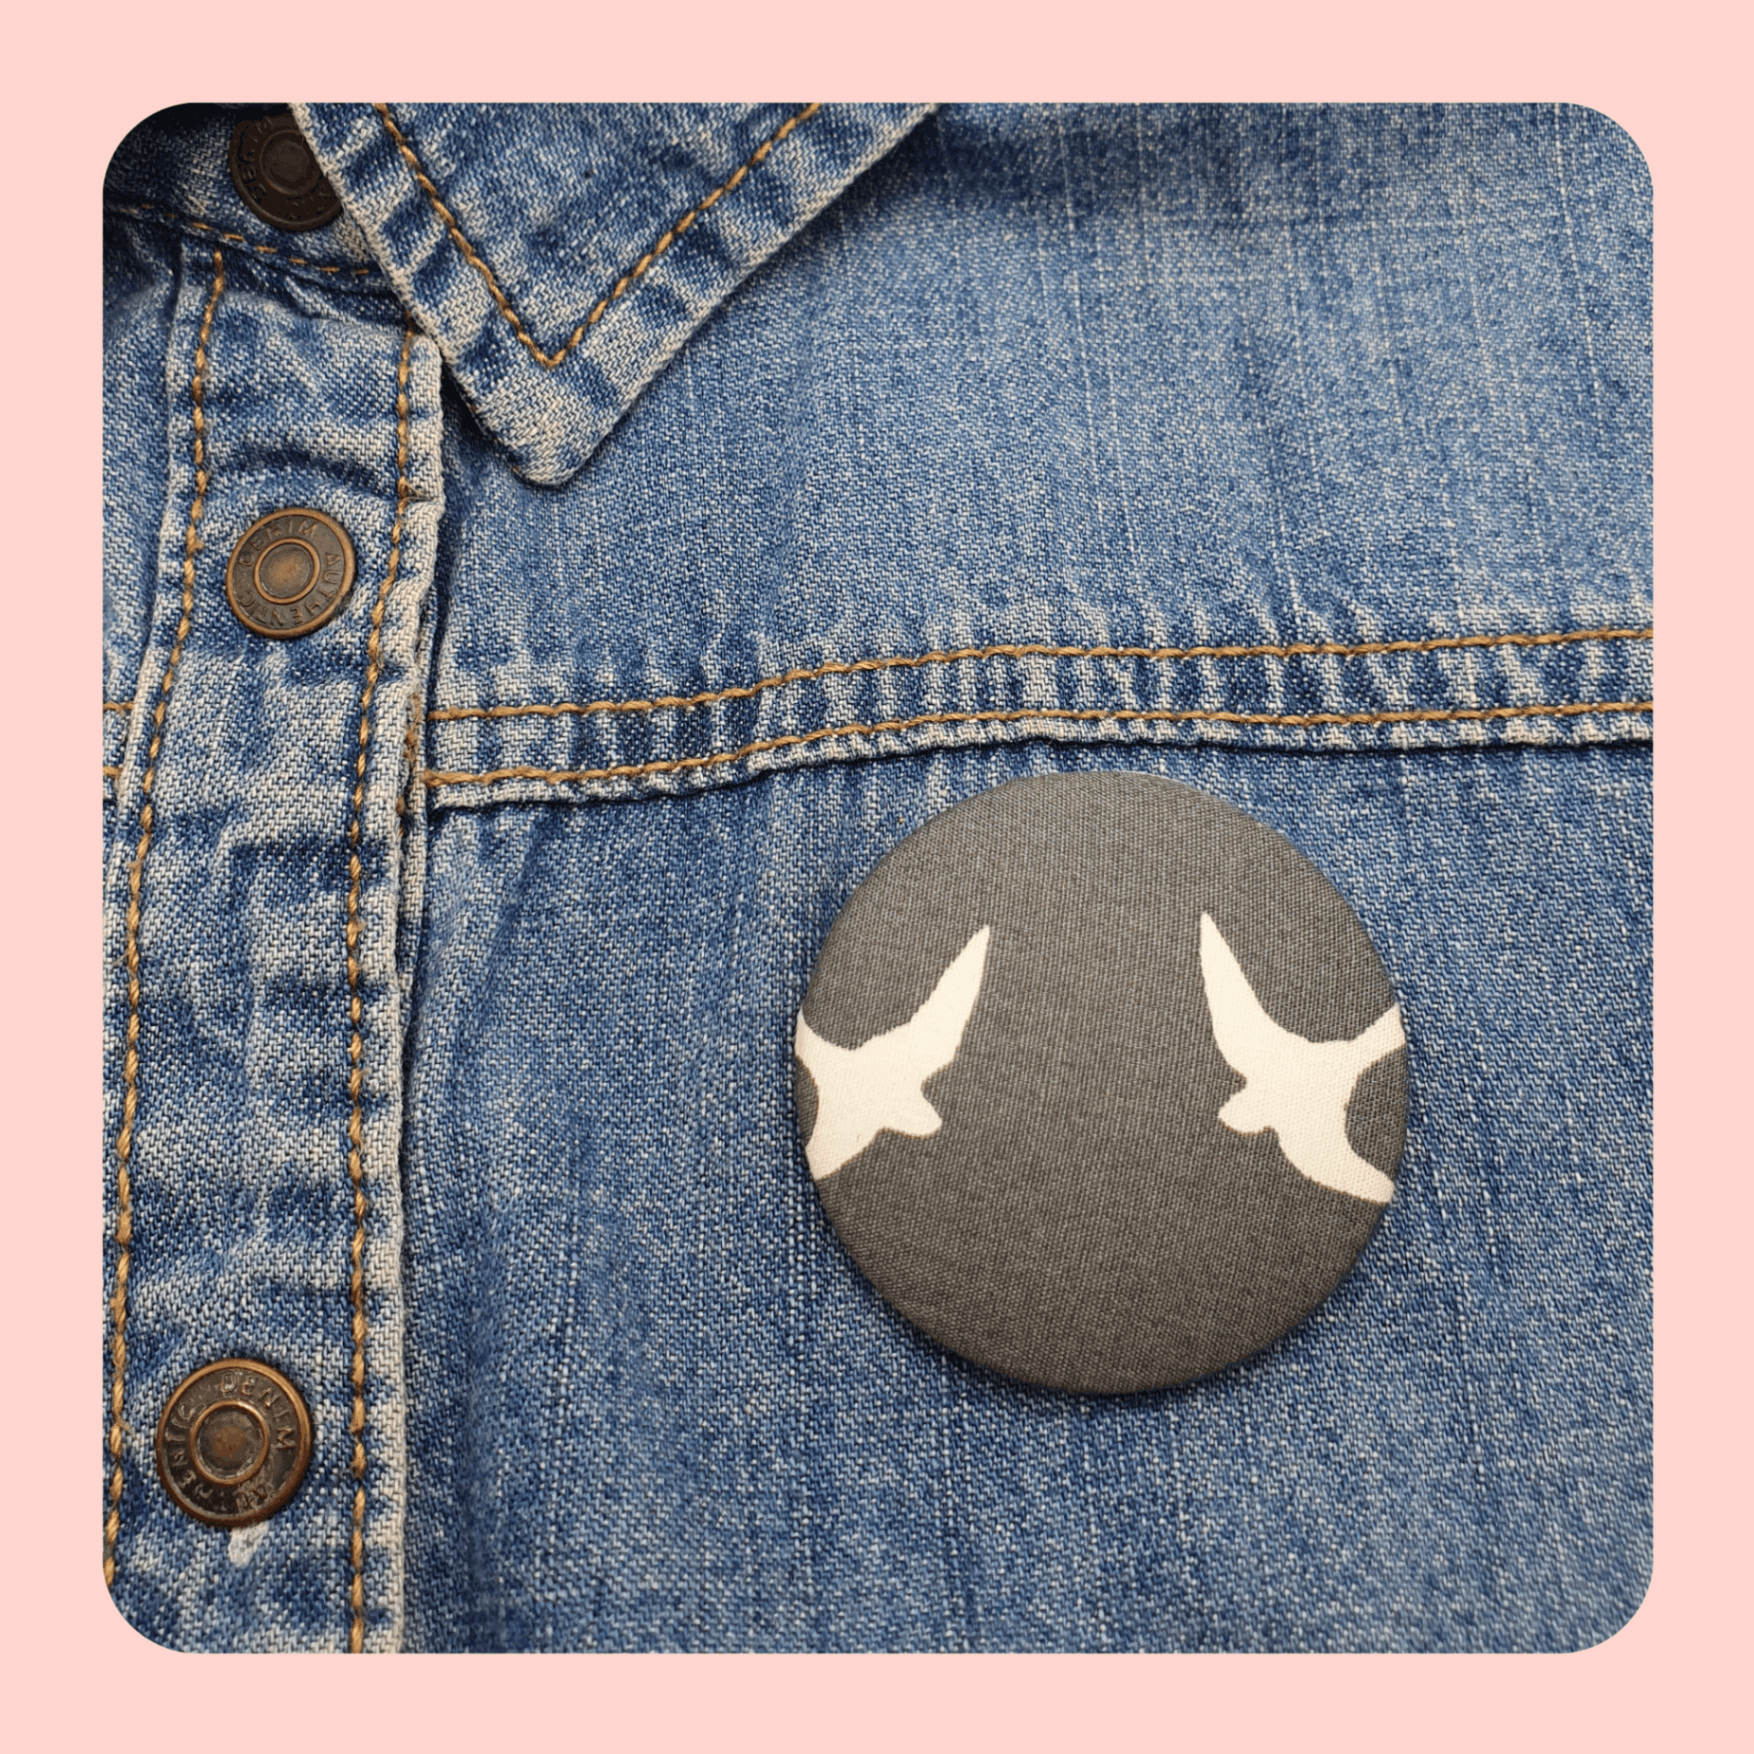 Grey bird pin brooch